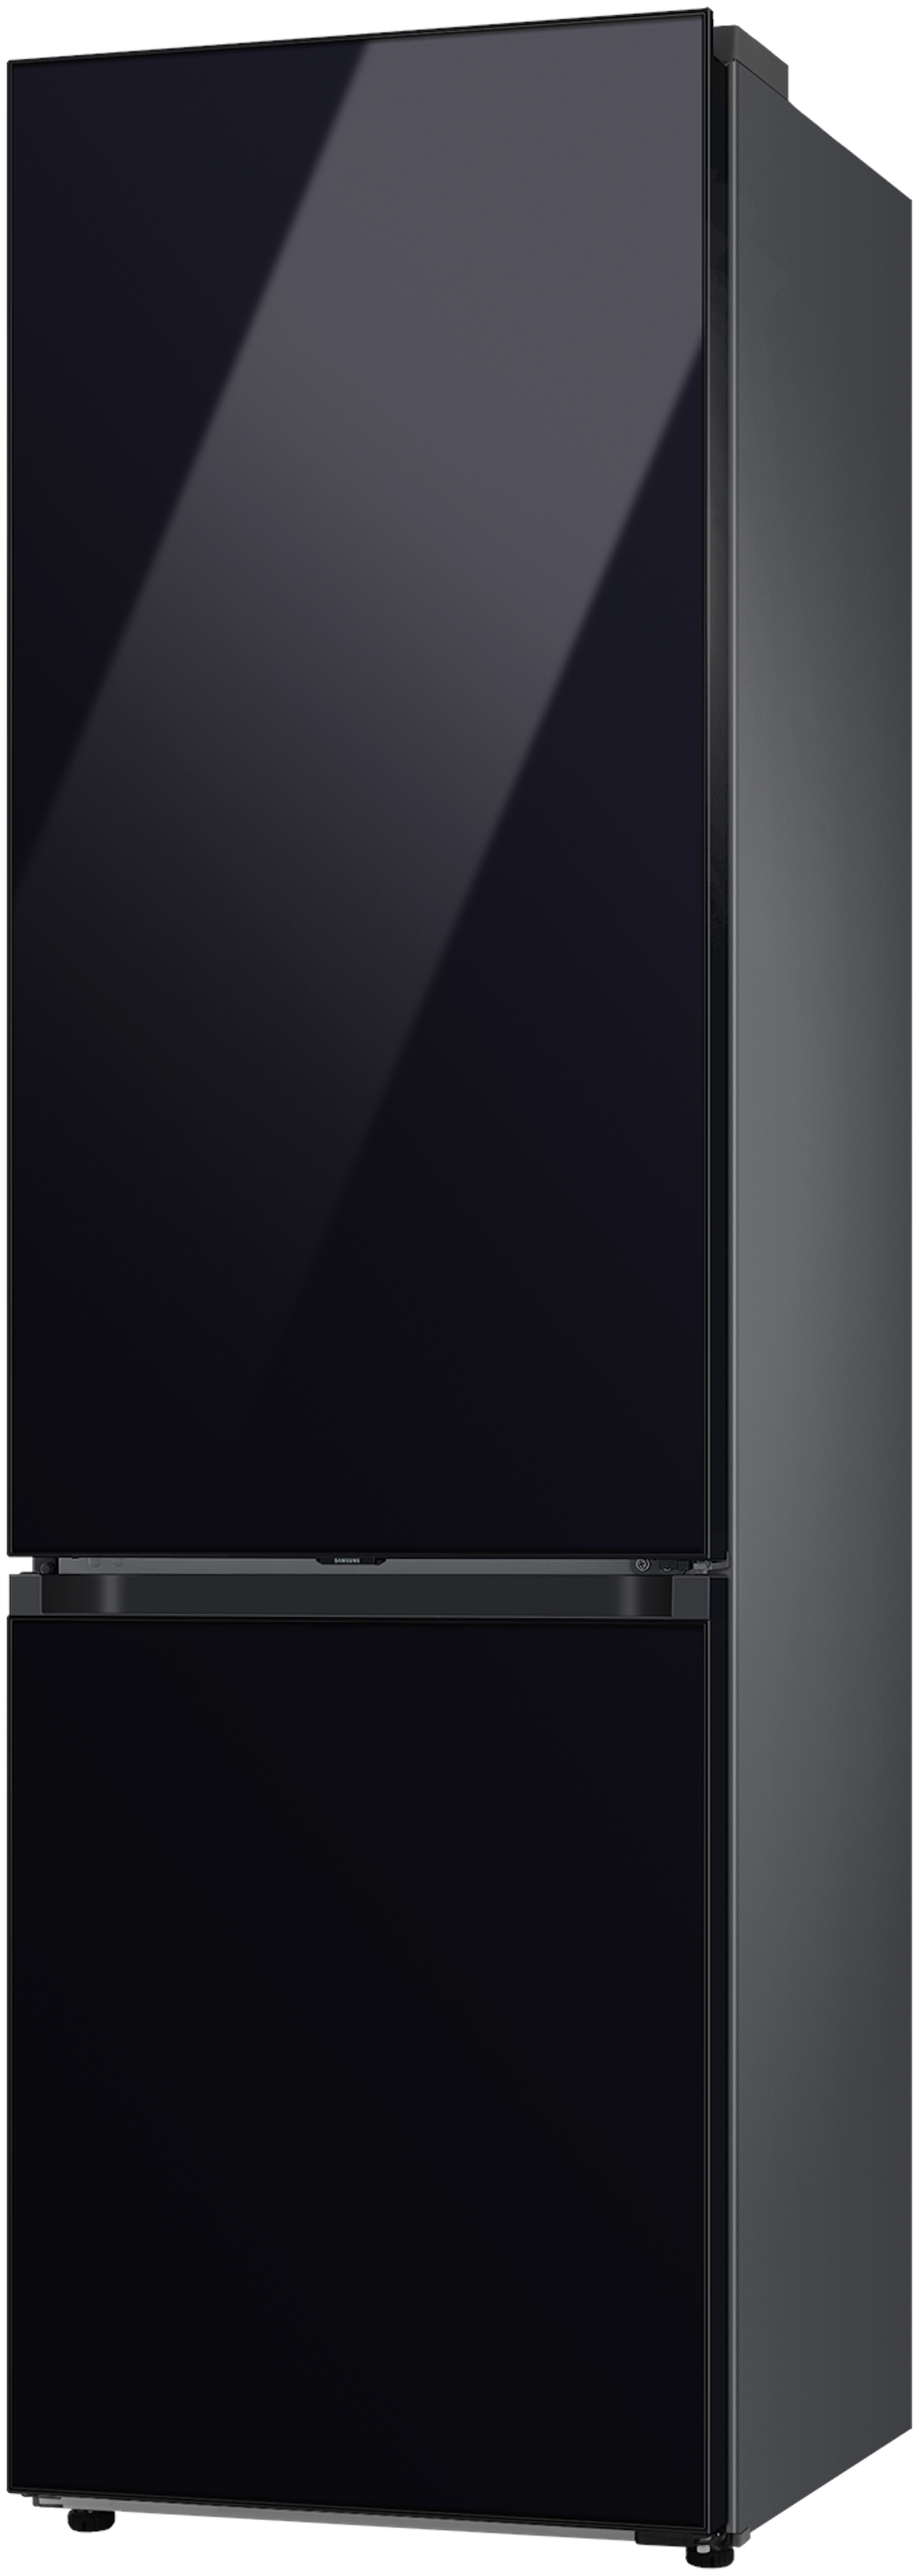 Samsung RB38C7B6B22/EF vrijstaand koelkast afbeelding 6